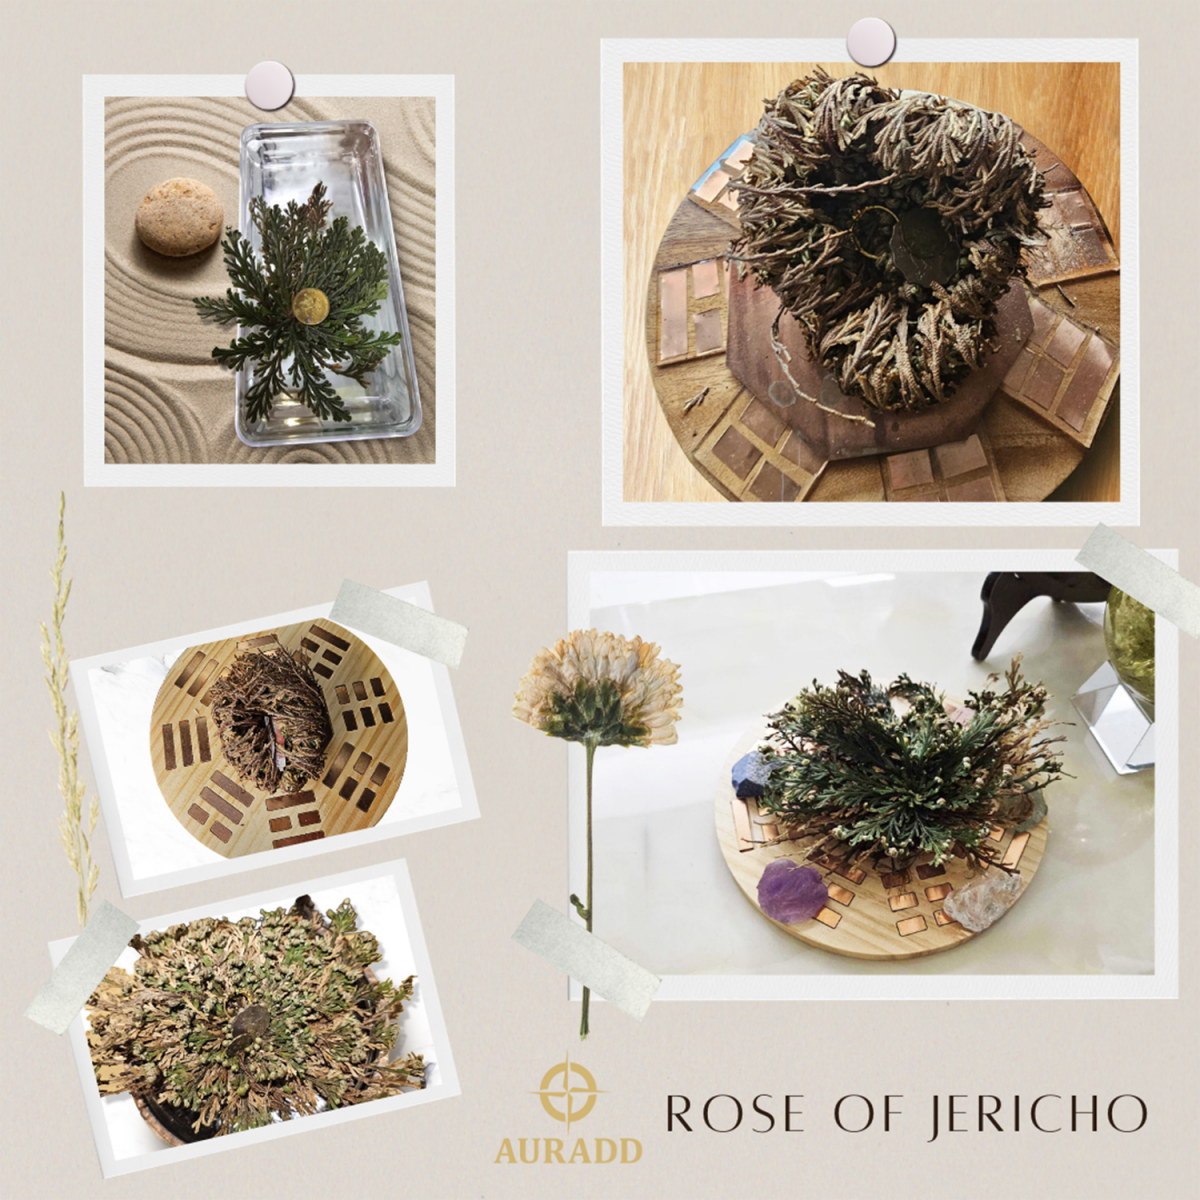 墨西哥奇蹟玫瑰Rose Of Jericho(細碼) 復活卷柏植物 魔法石頭花草 千年神奇能量植物 祈禱願望靈性草 AD-DECO-JC-S